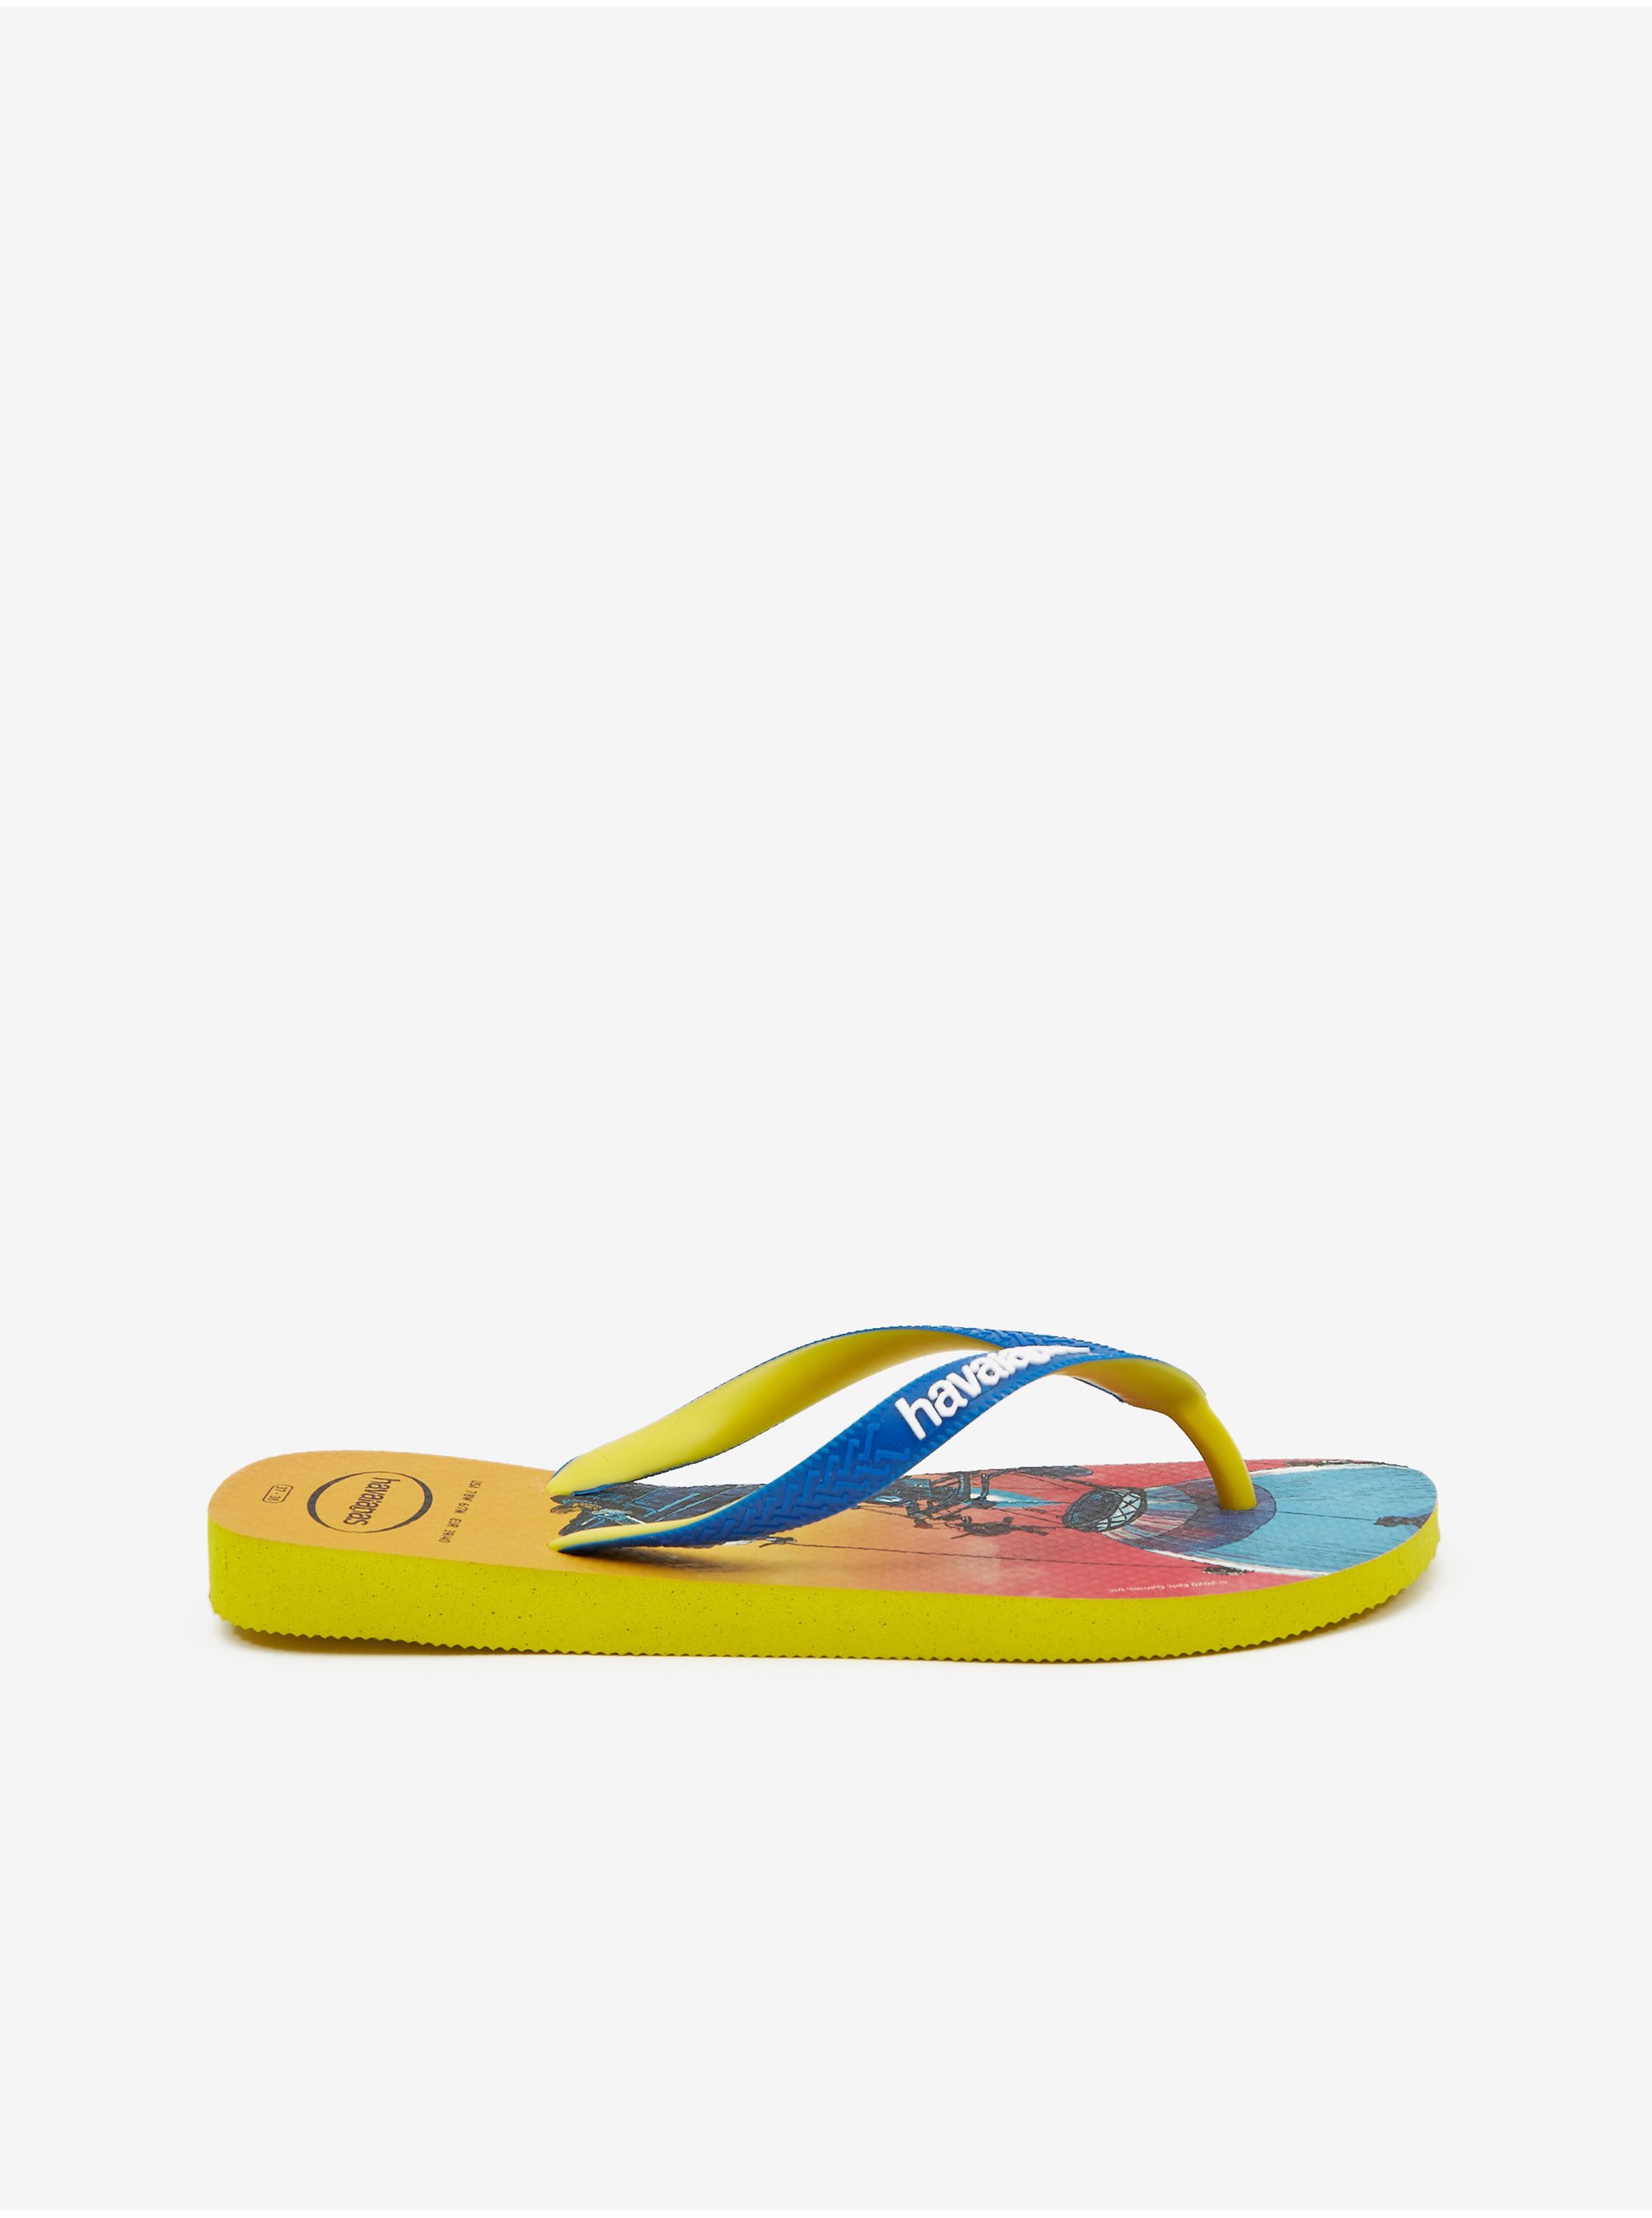 Lacno Sandále, papuče pre mužov Havaianas - žltá, modrá